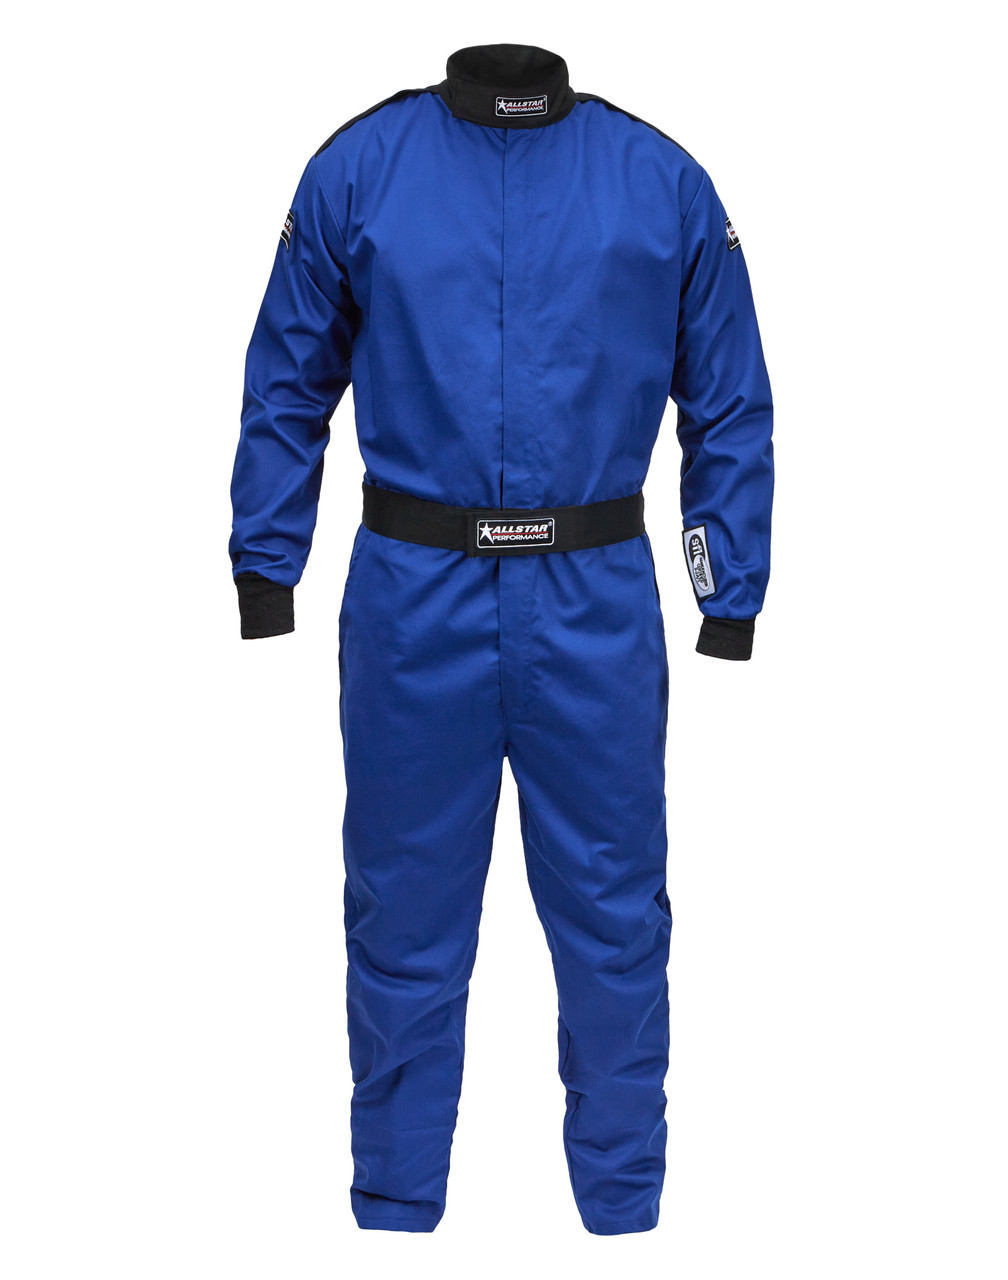 Racing Suit SFI 3.2A/1 S/L Blue Large